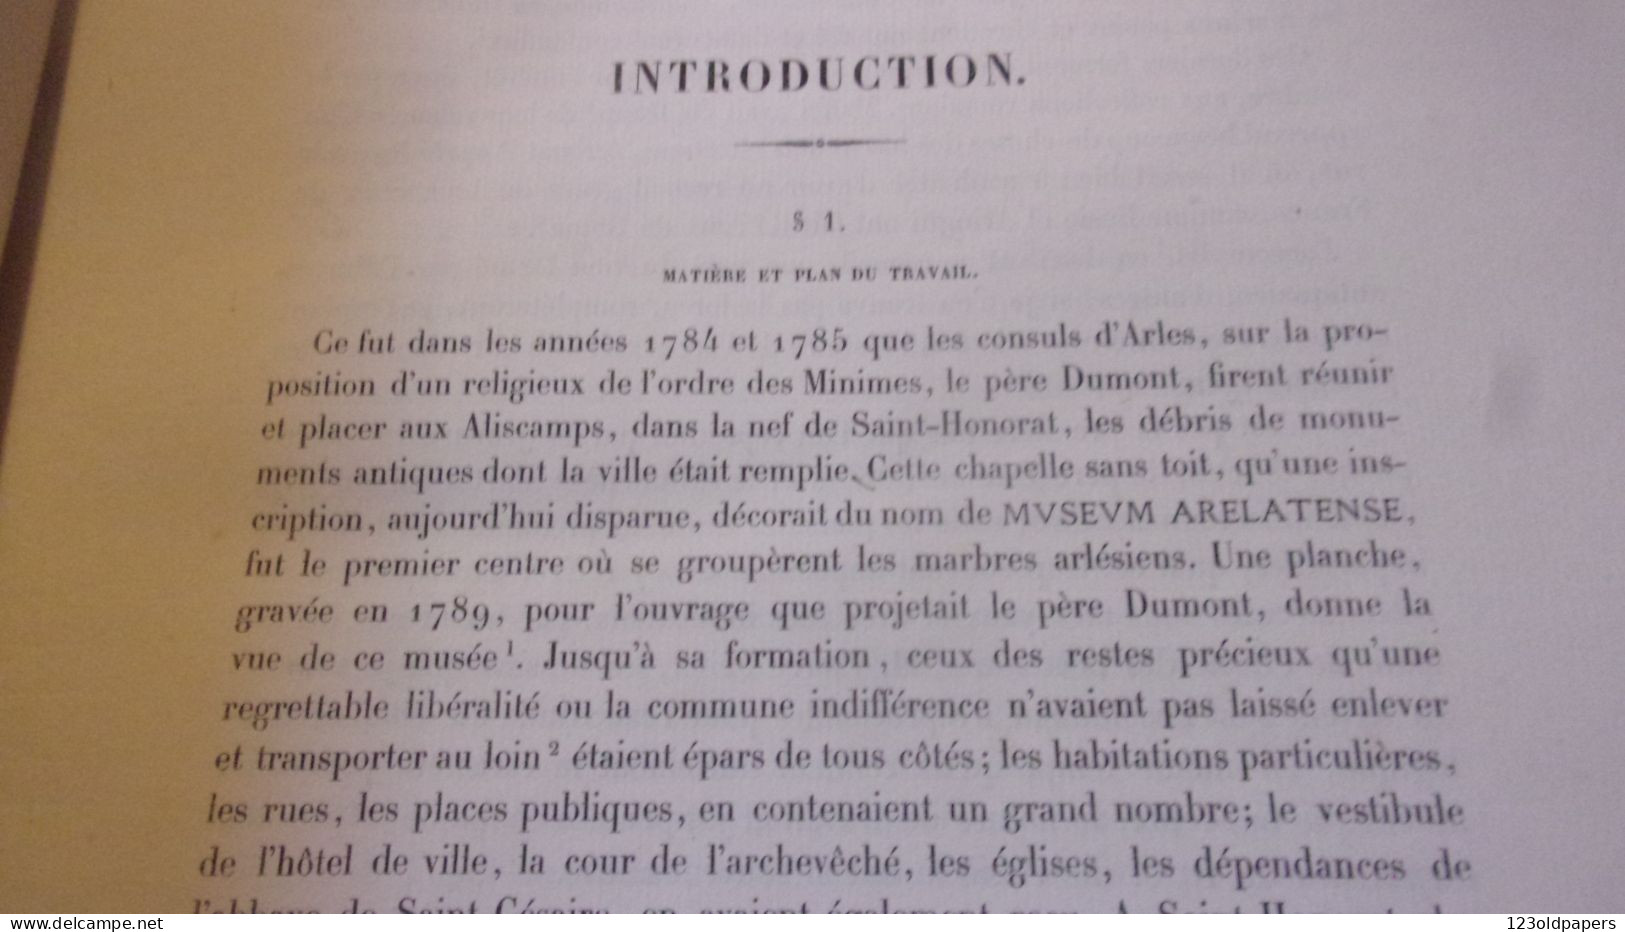 1886 Etude sur les sarcophages chrétiens antiques de la ville d'Arles... / Edmond Le Blant DESSINS PIERRE FRITEL / PLANC